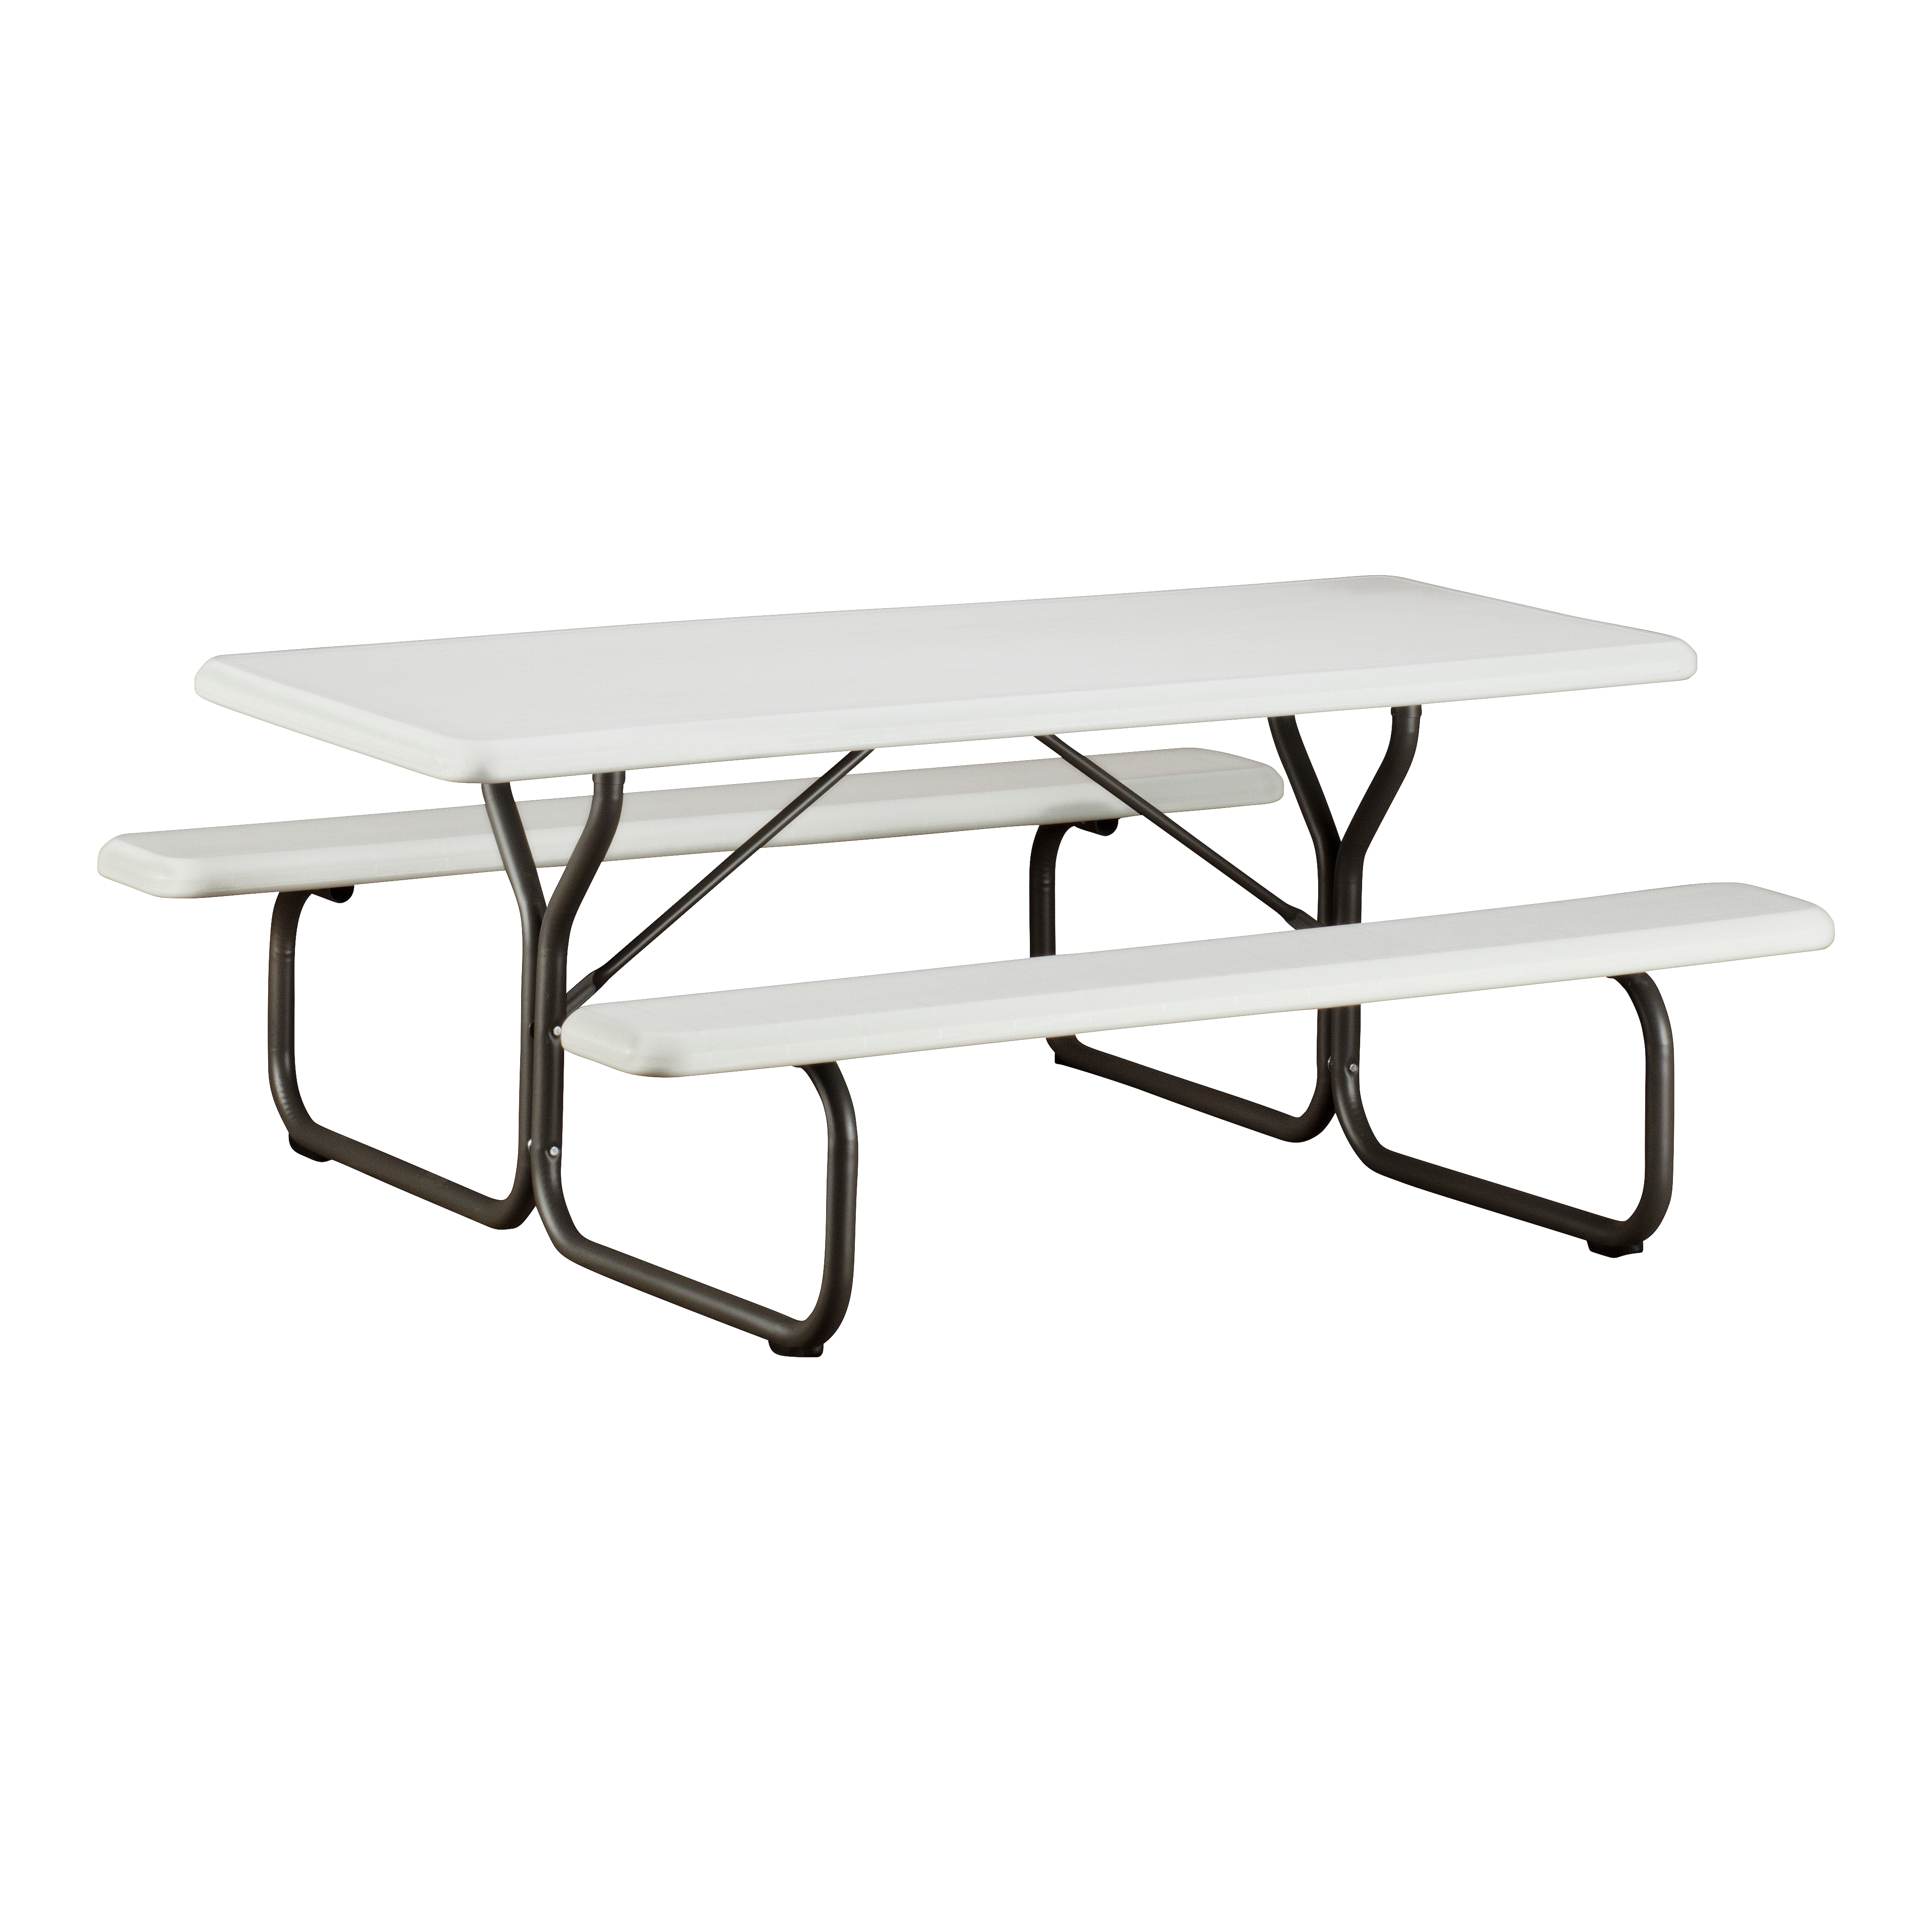 A platinum six-foot picnic table.